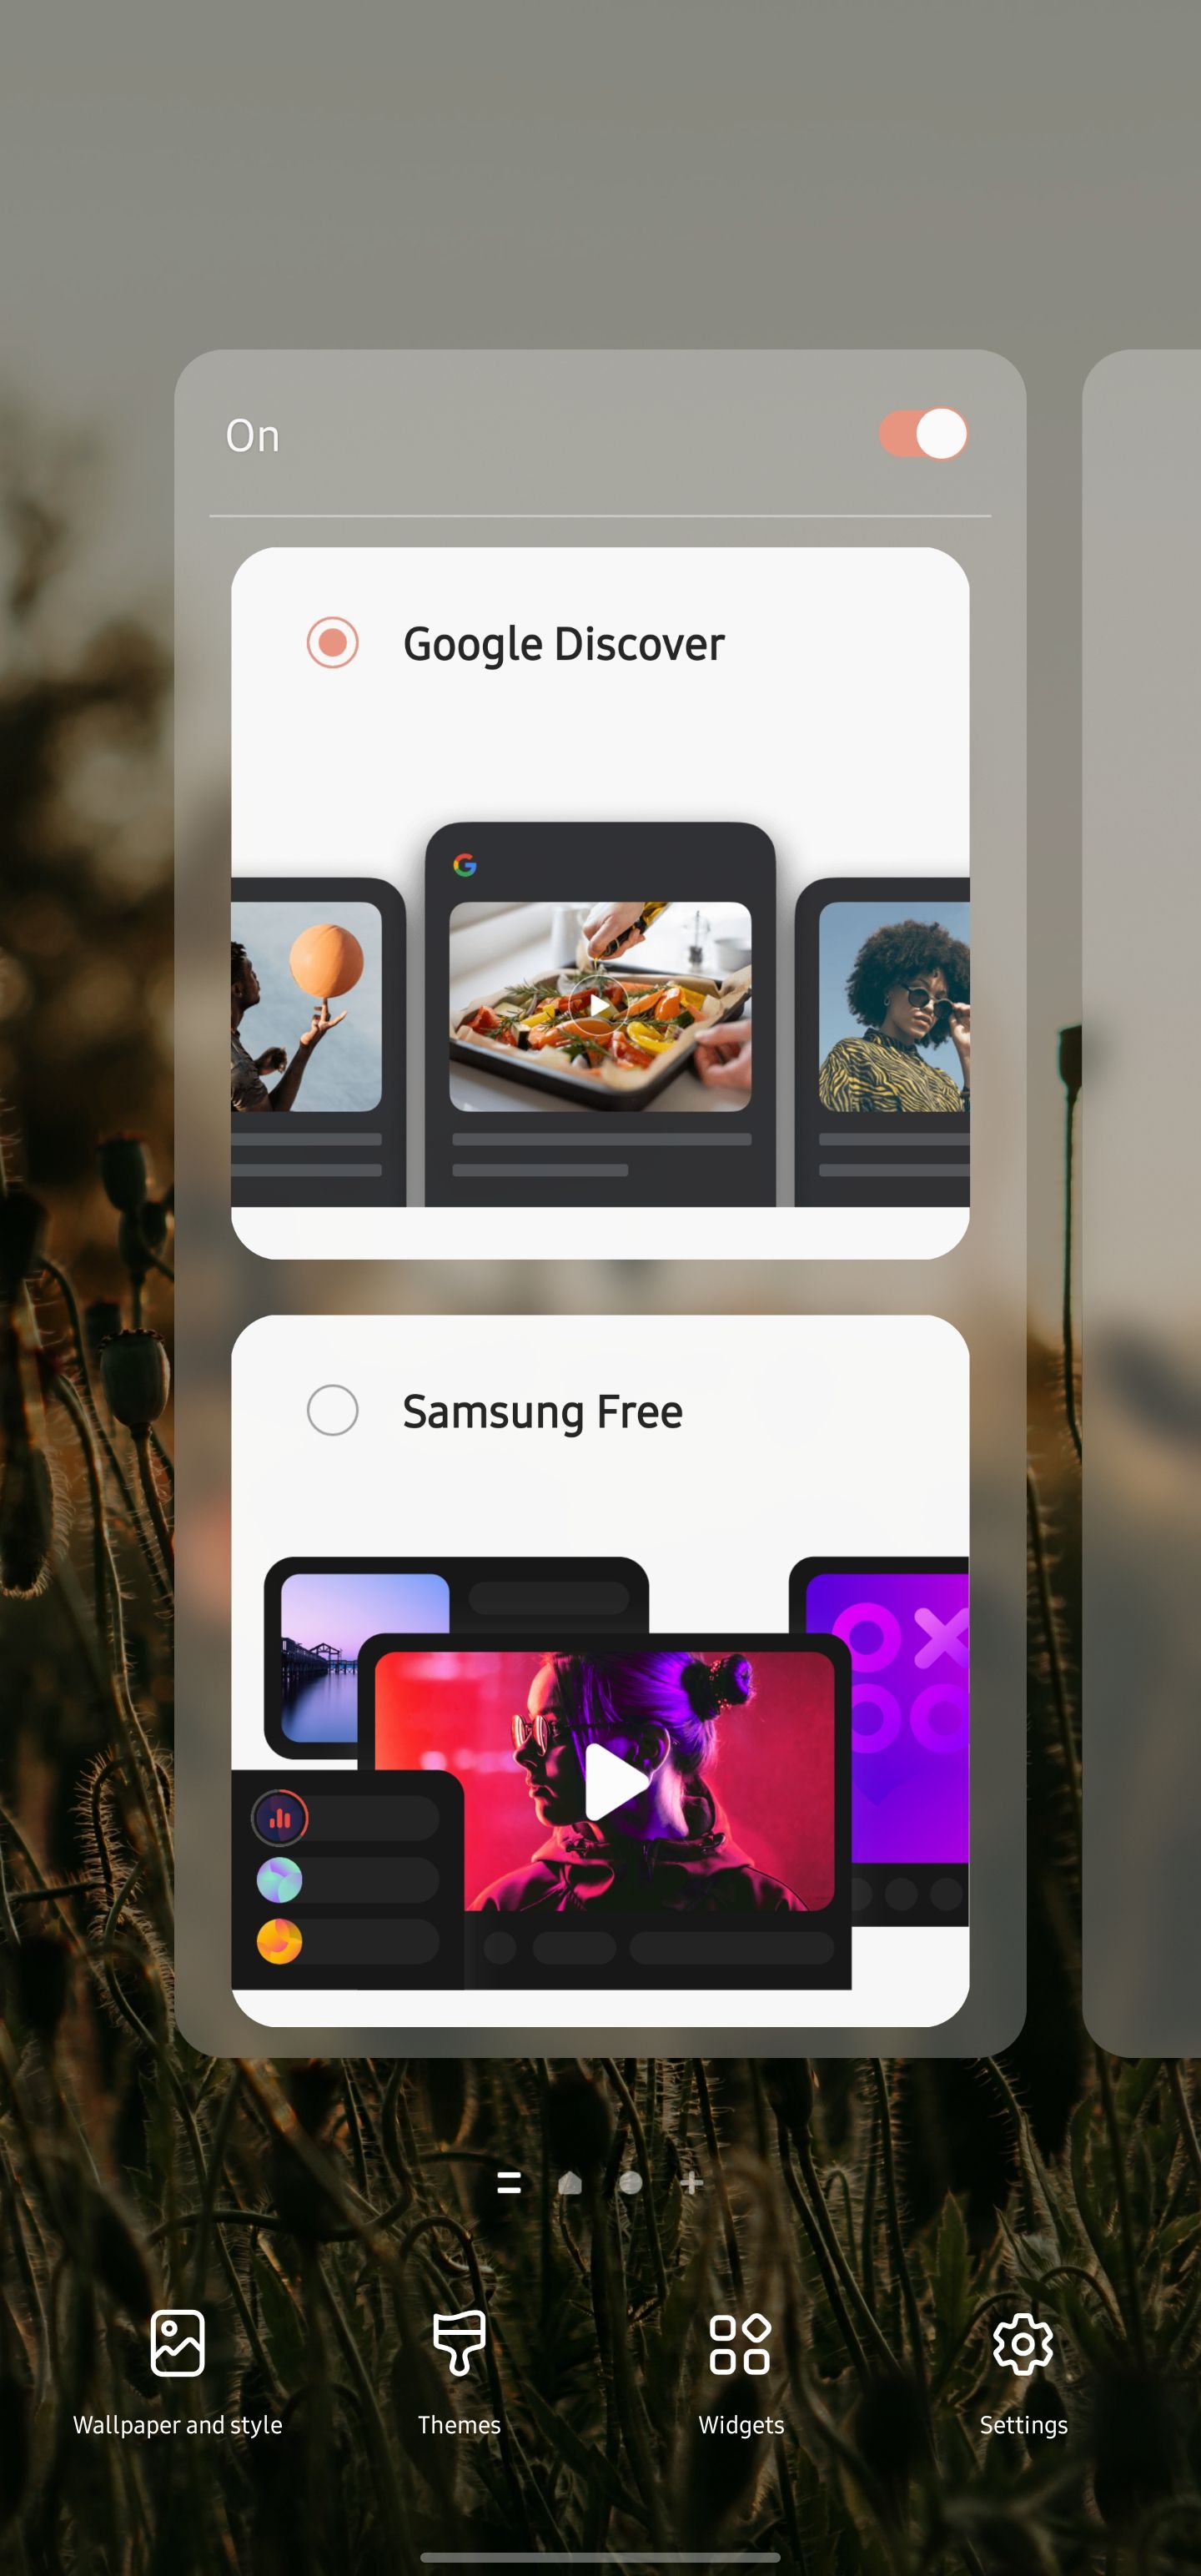 Configuração do painel da tela inicial do Samsung Google Discover/Samsung Free